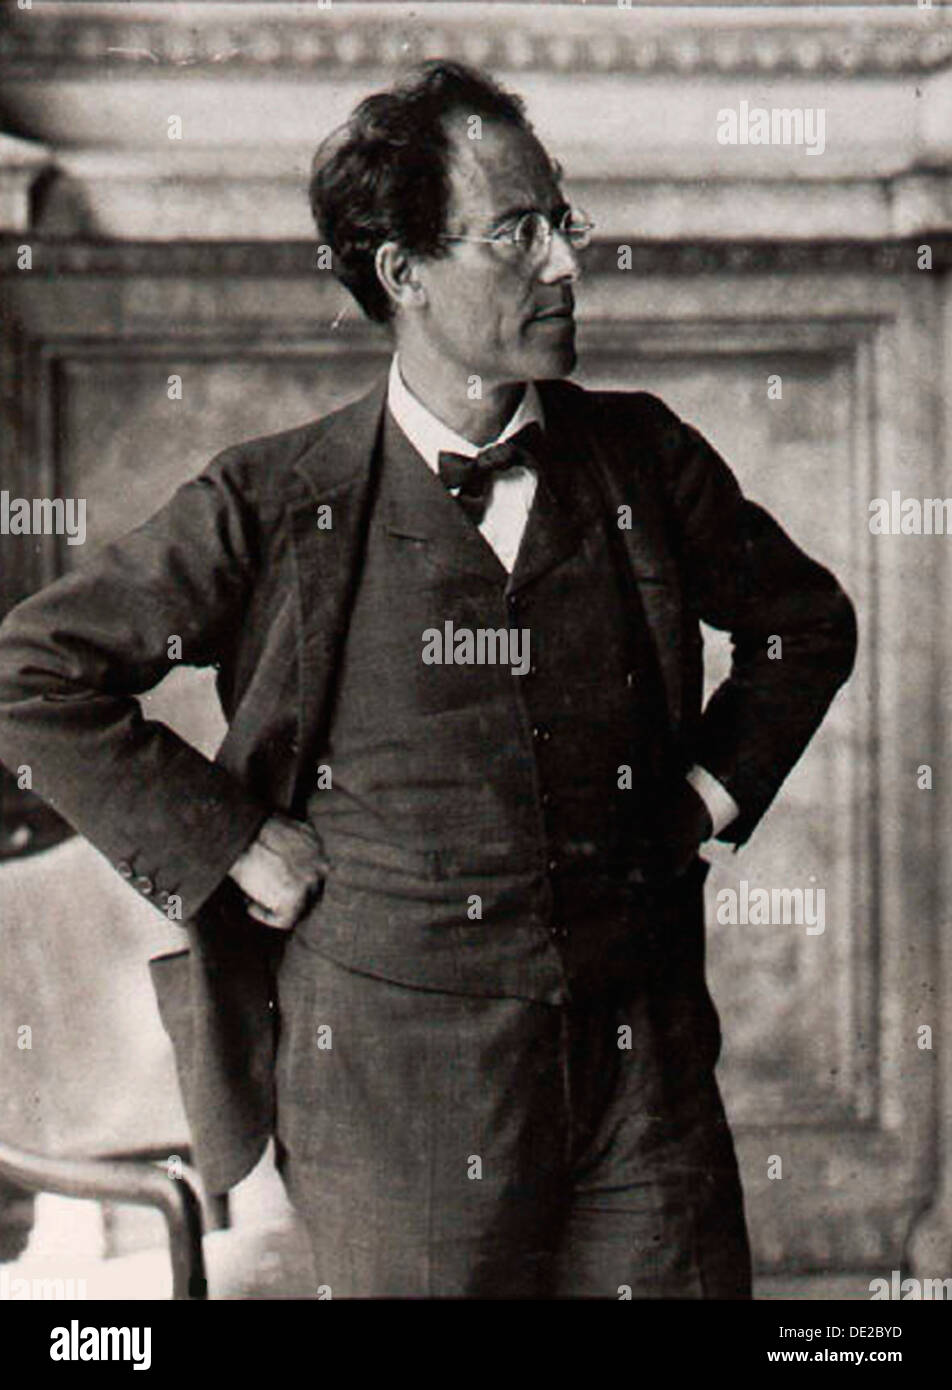 Gustav Mahler, compositor y director de orquesta austriaco, de 1900. Artista: Anon Foto de stock